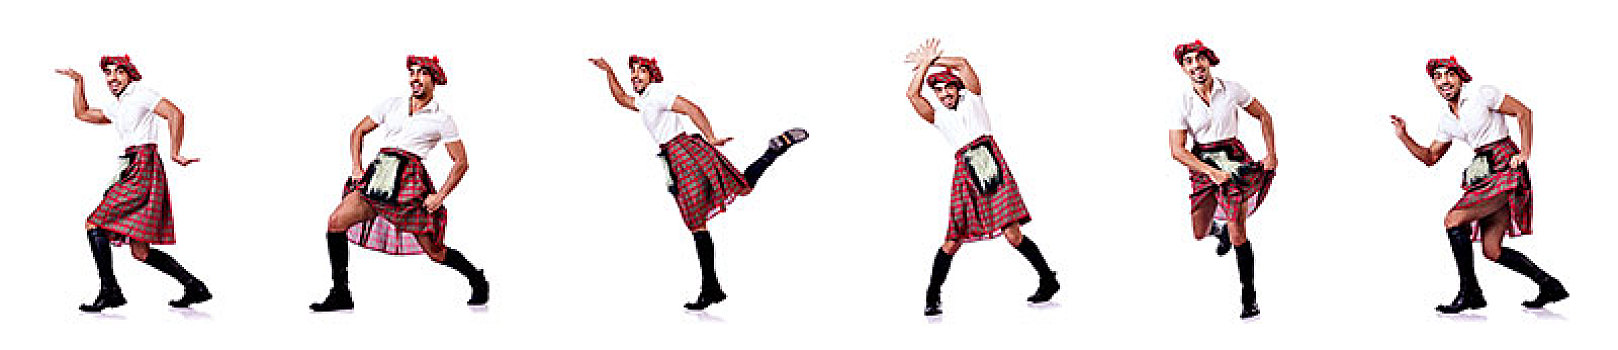 苏格兰人,男人,跳舞,白色背景